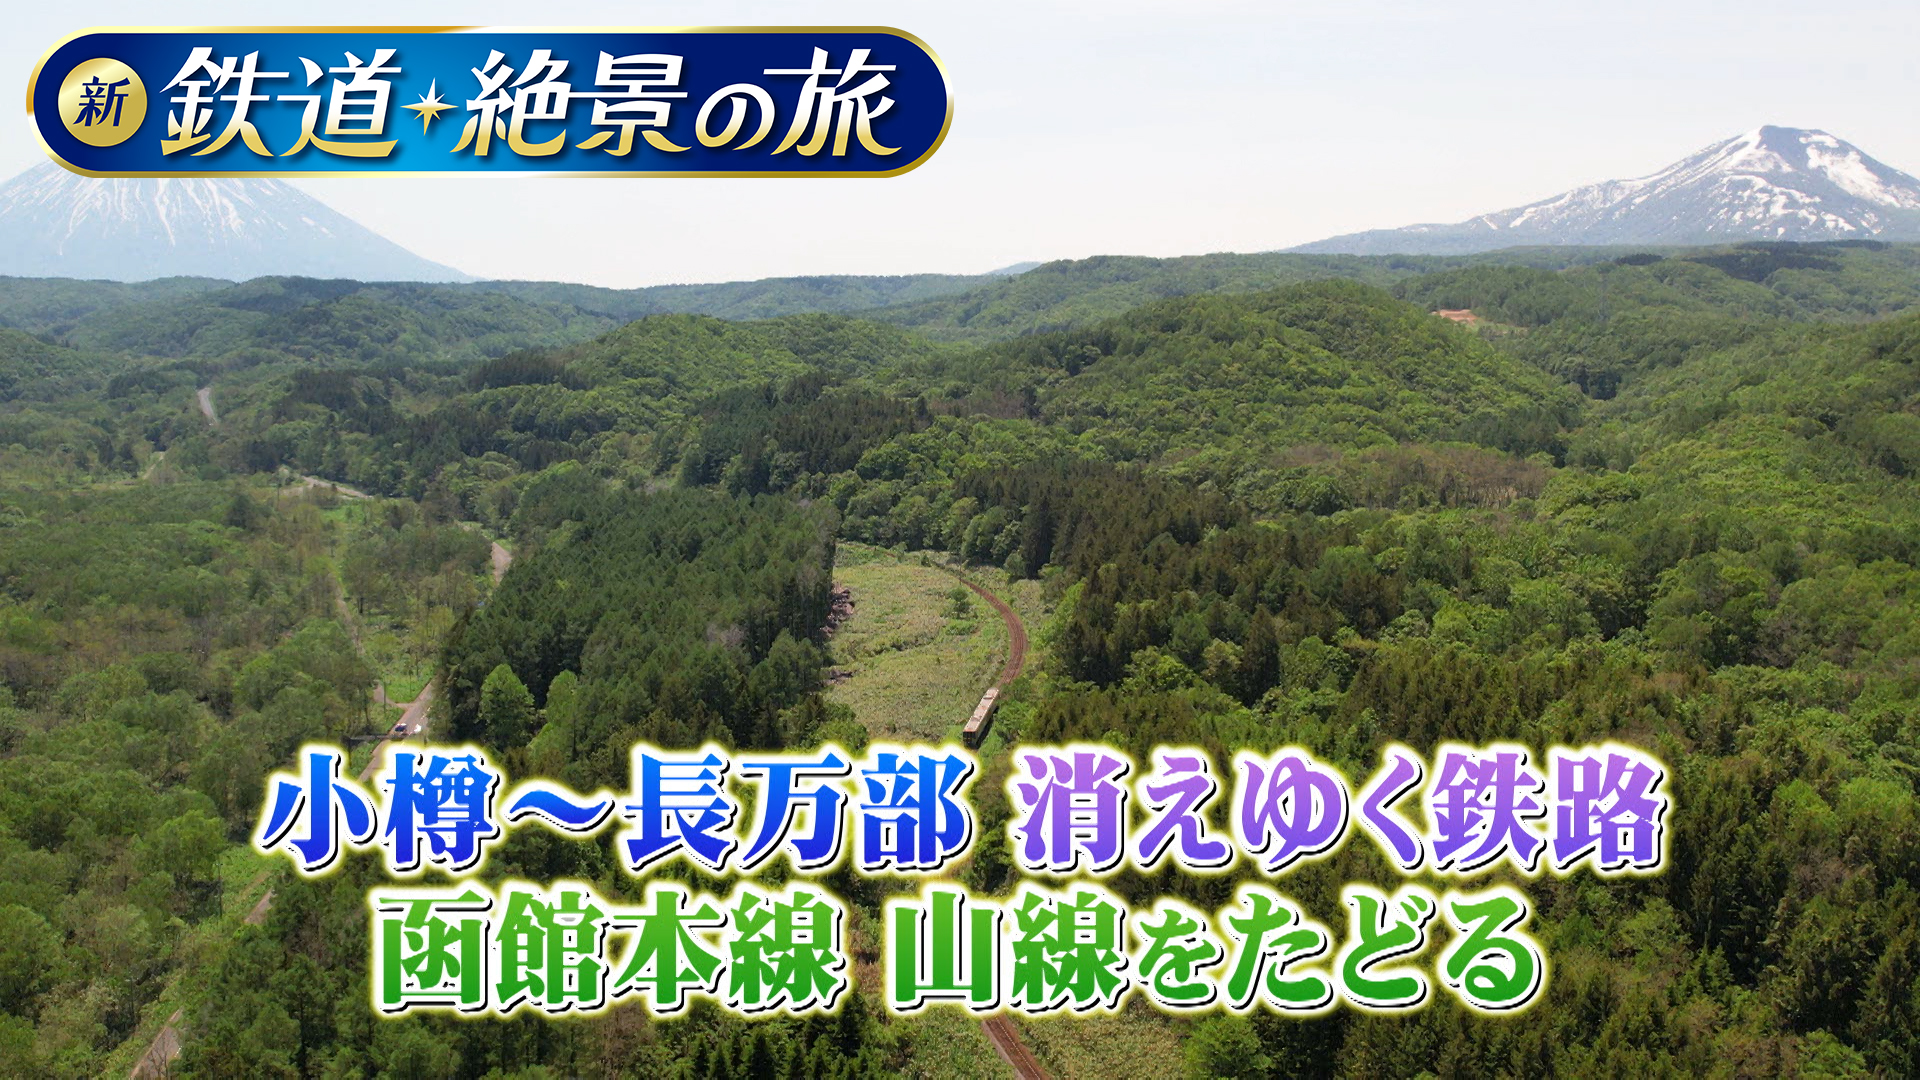 無料テレビで【BS朝日】新 鉄道・絶景の旅を視聴する